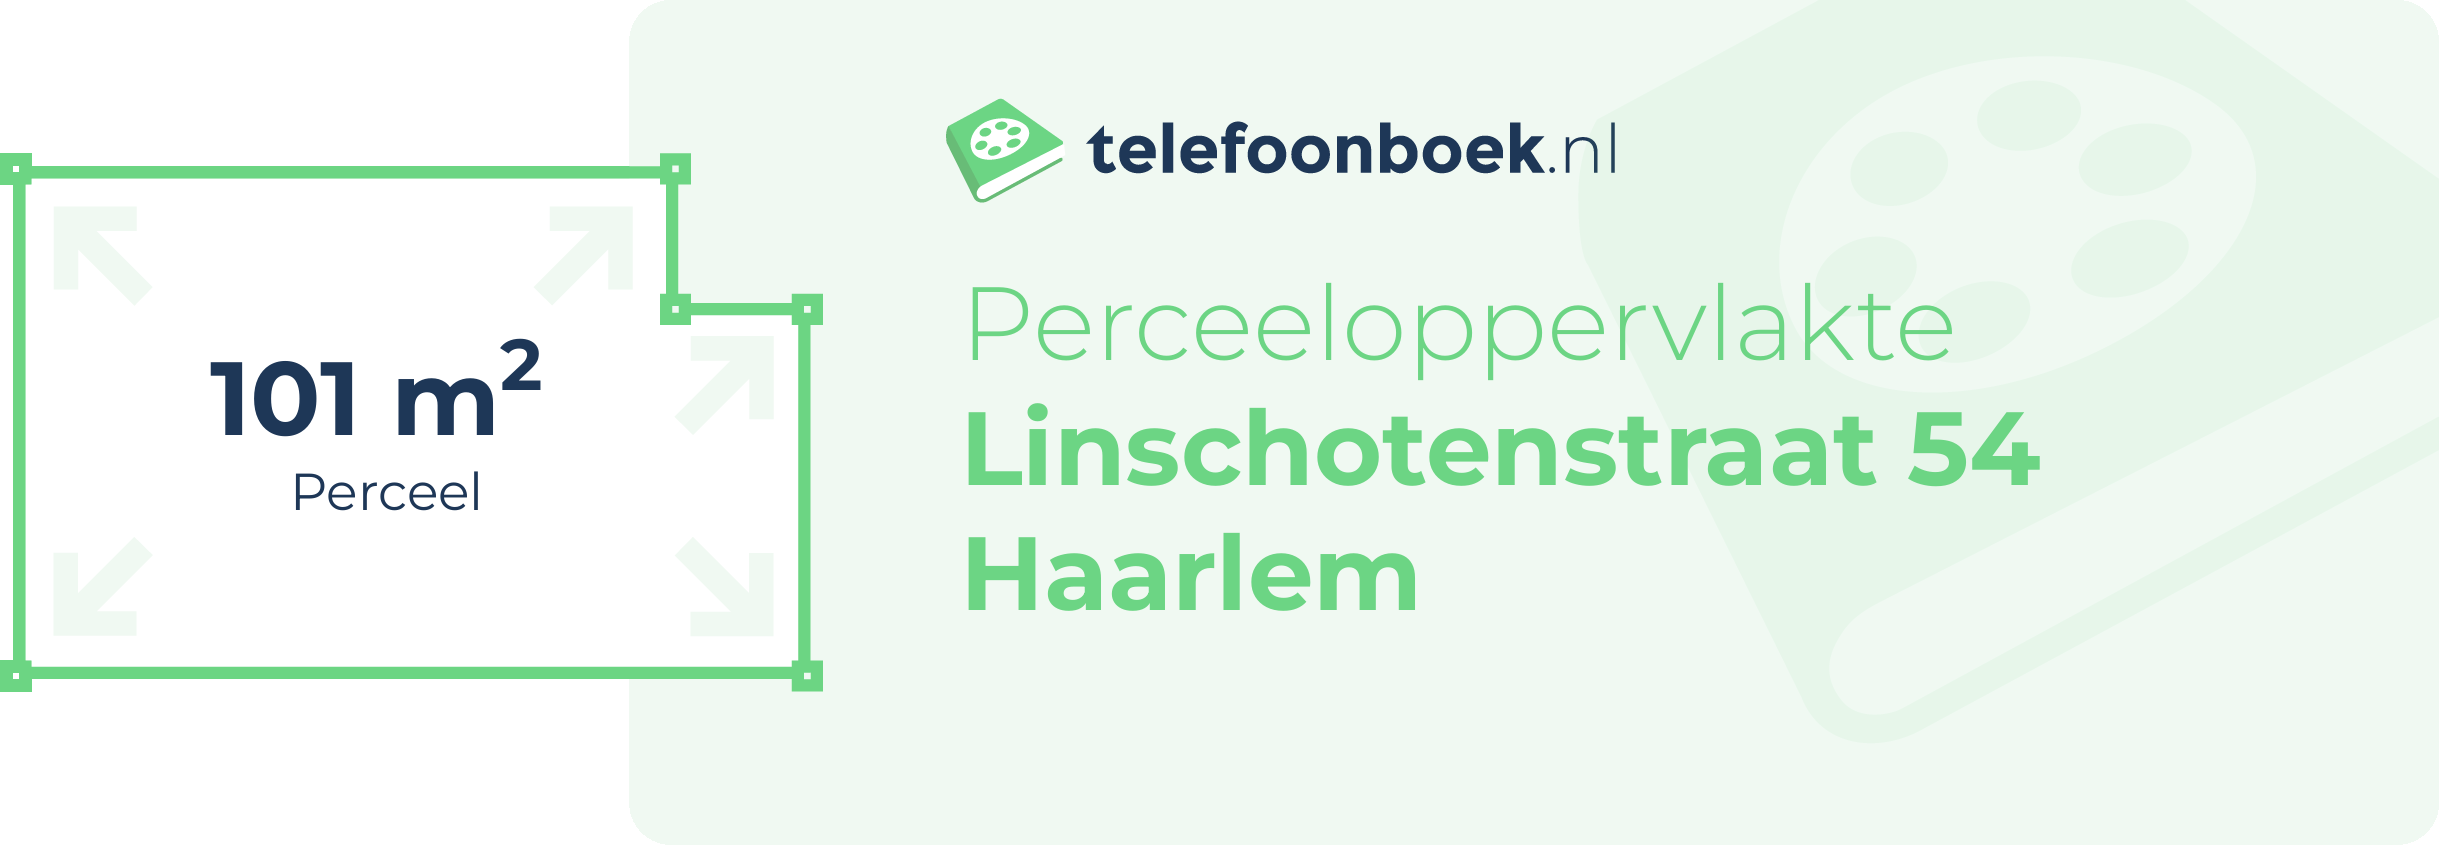 Perceeloppervlakte Linschotenstraat 54 Haarlem